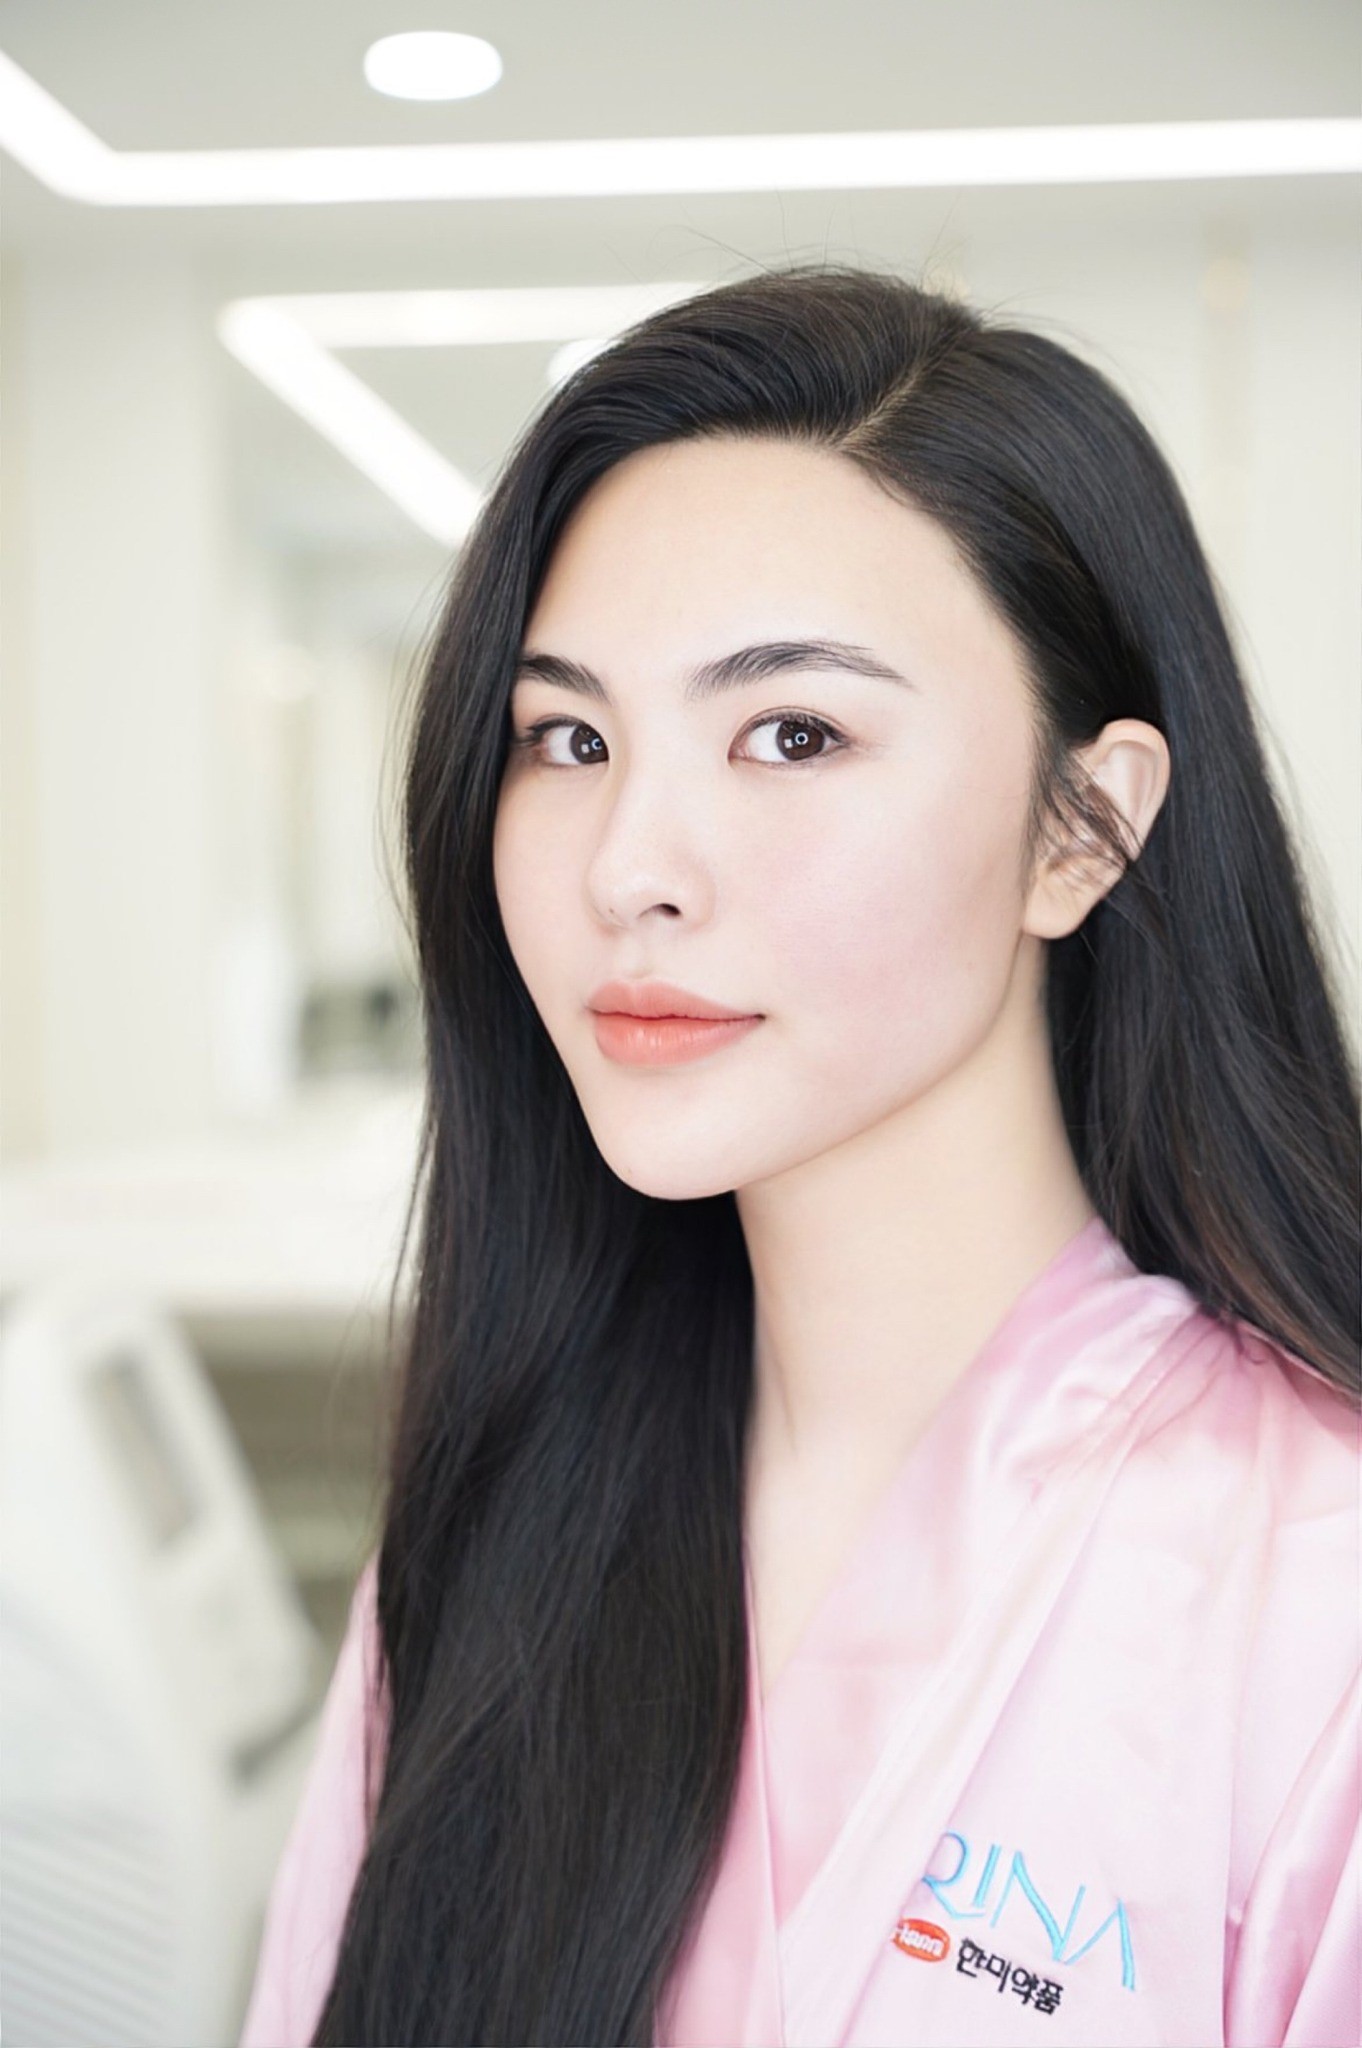 Cố vấn sắc đẹp Hoa hậu Du lịch 2022 Quỳnh Trang chia sẻ bí quyết giữ gìn làn da tươi trẻ khi bận rộn - ảnh 5